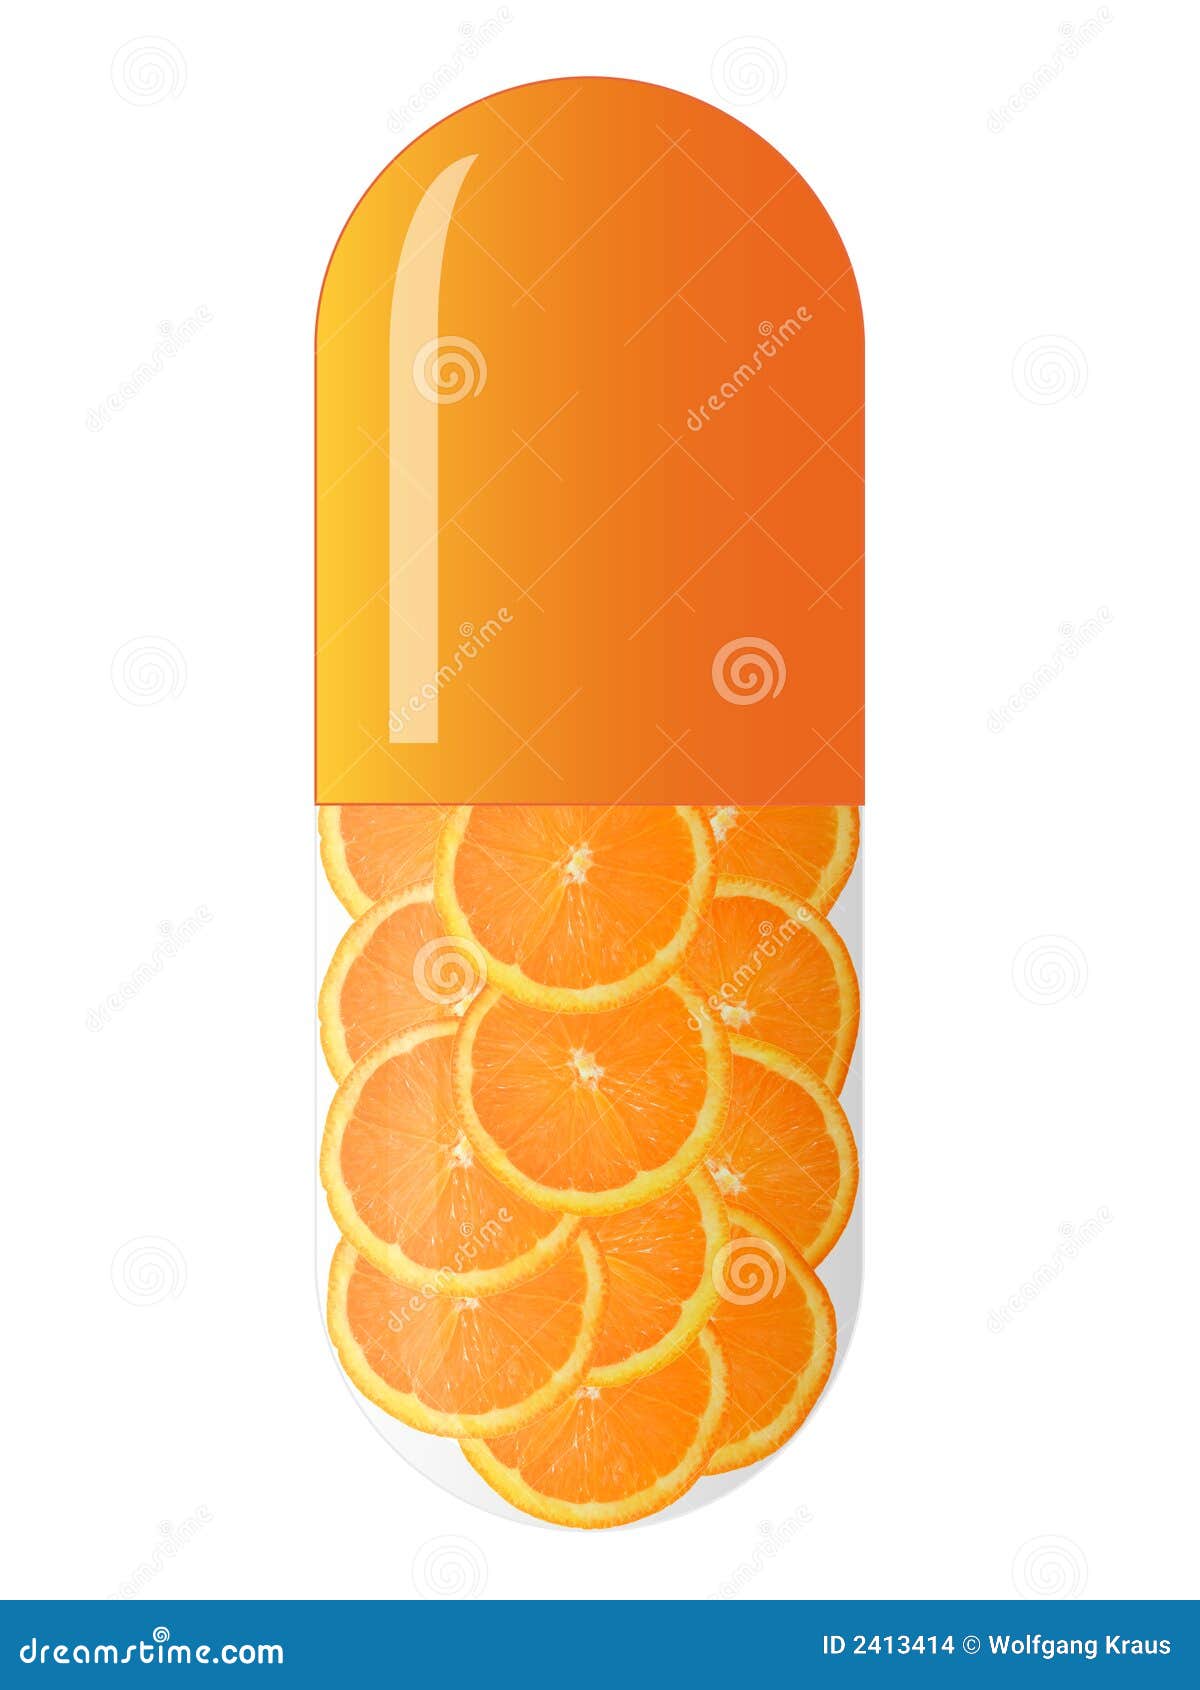 orange capsule with oranges